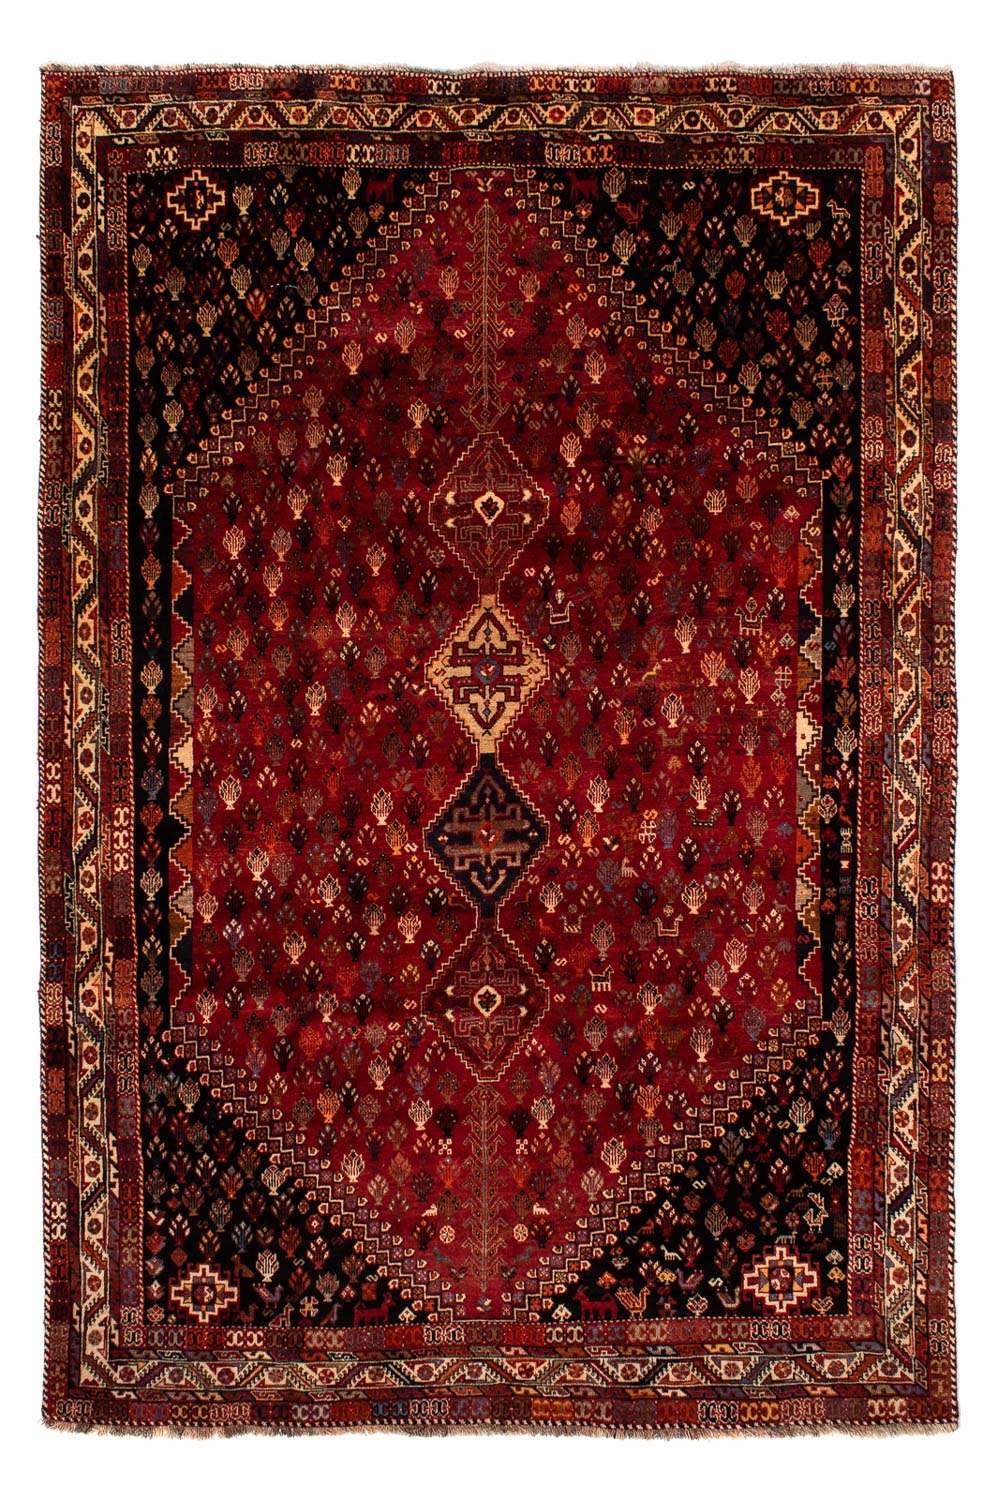 Alfombra persa - Nómada - 315 x 216 cm - rojo oscuro